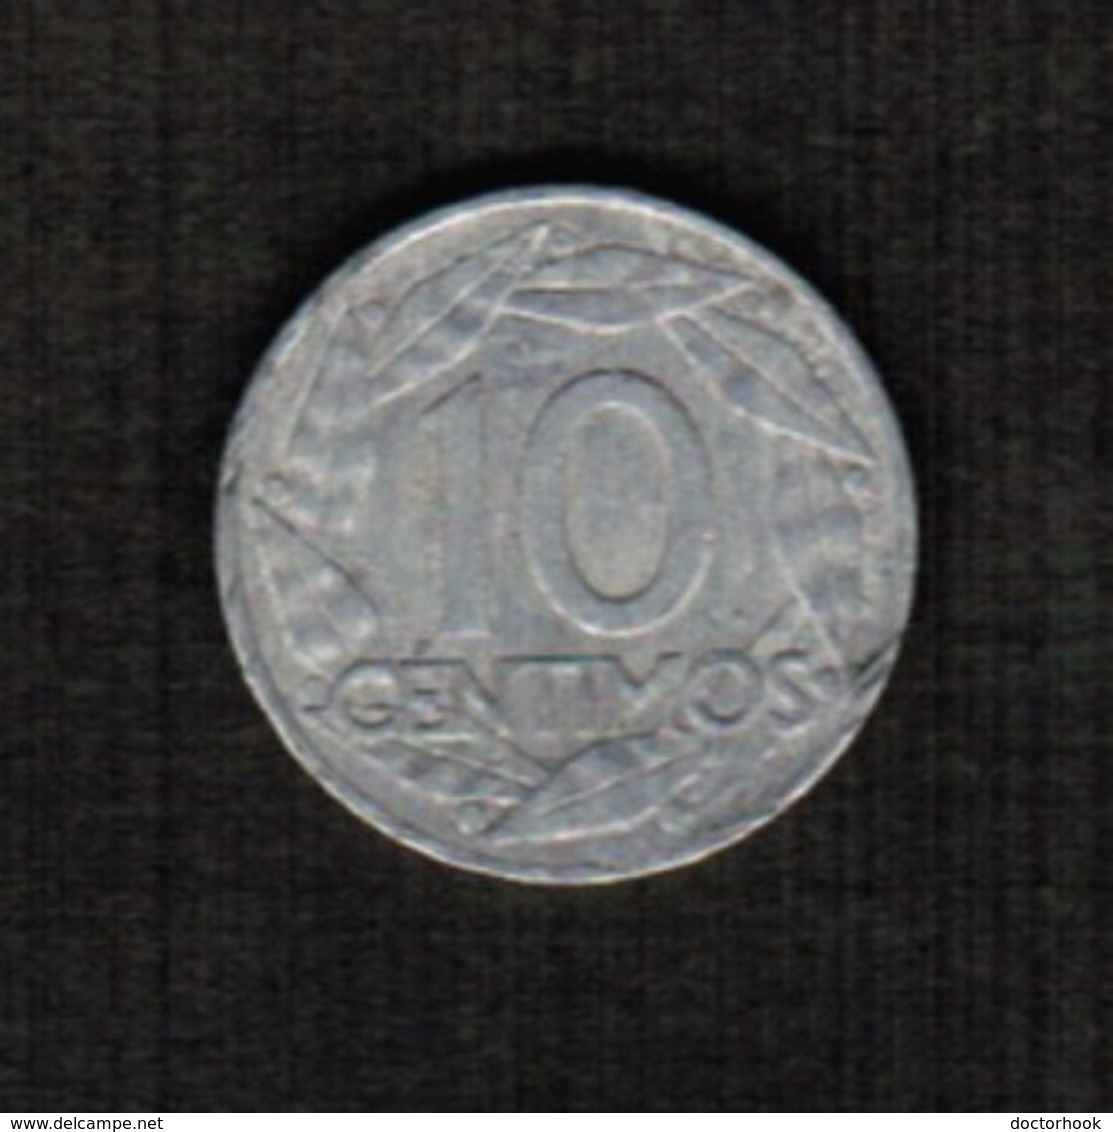 SPAIN  10 CENTIMOS 1959 (KM # 790) #5296 - 10 Centimos